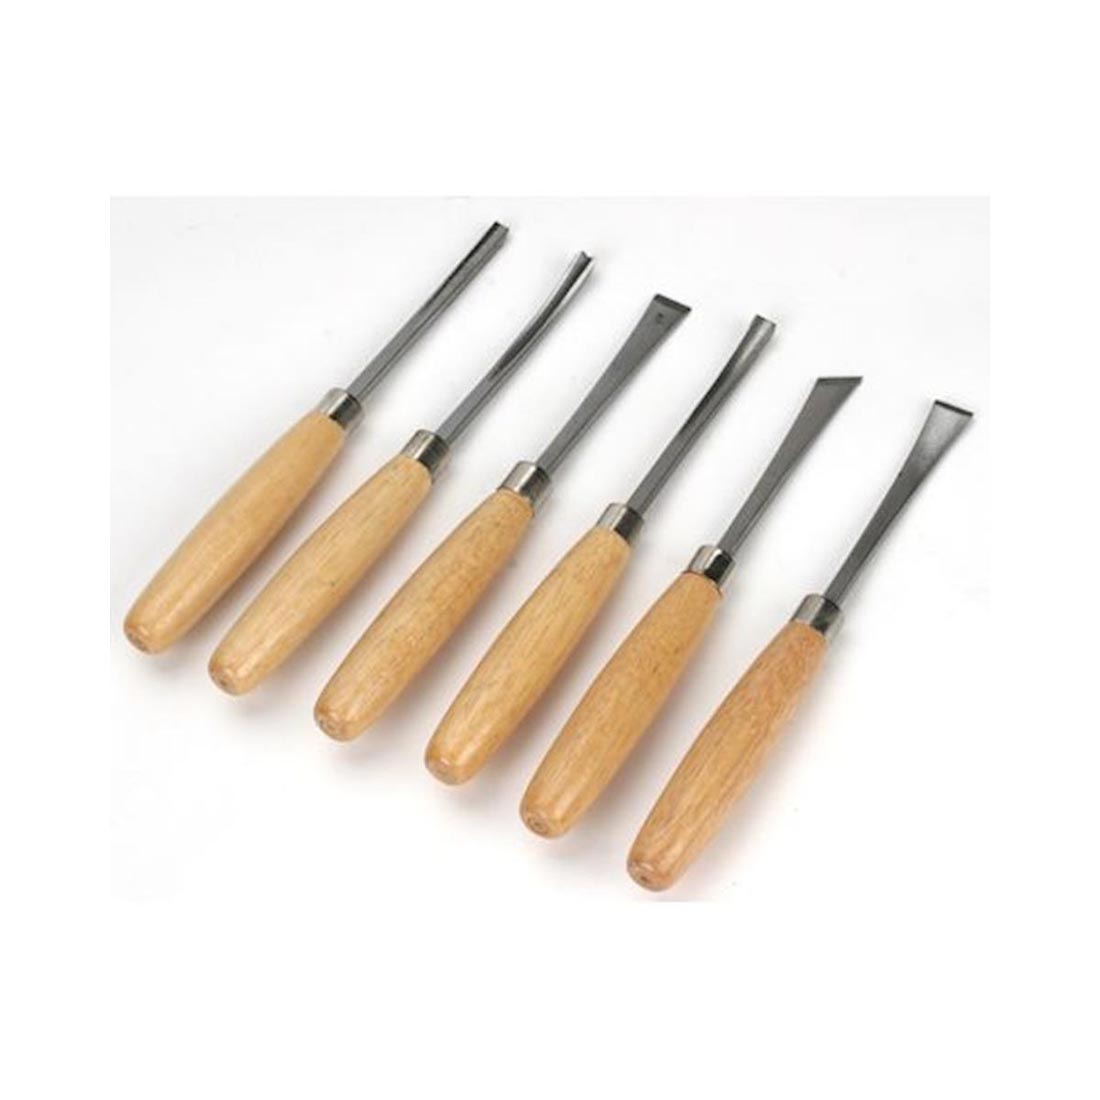 6-Knife Excel Professional Carving Set